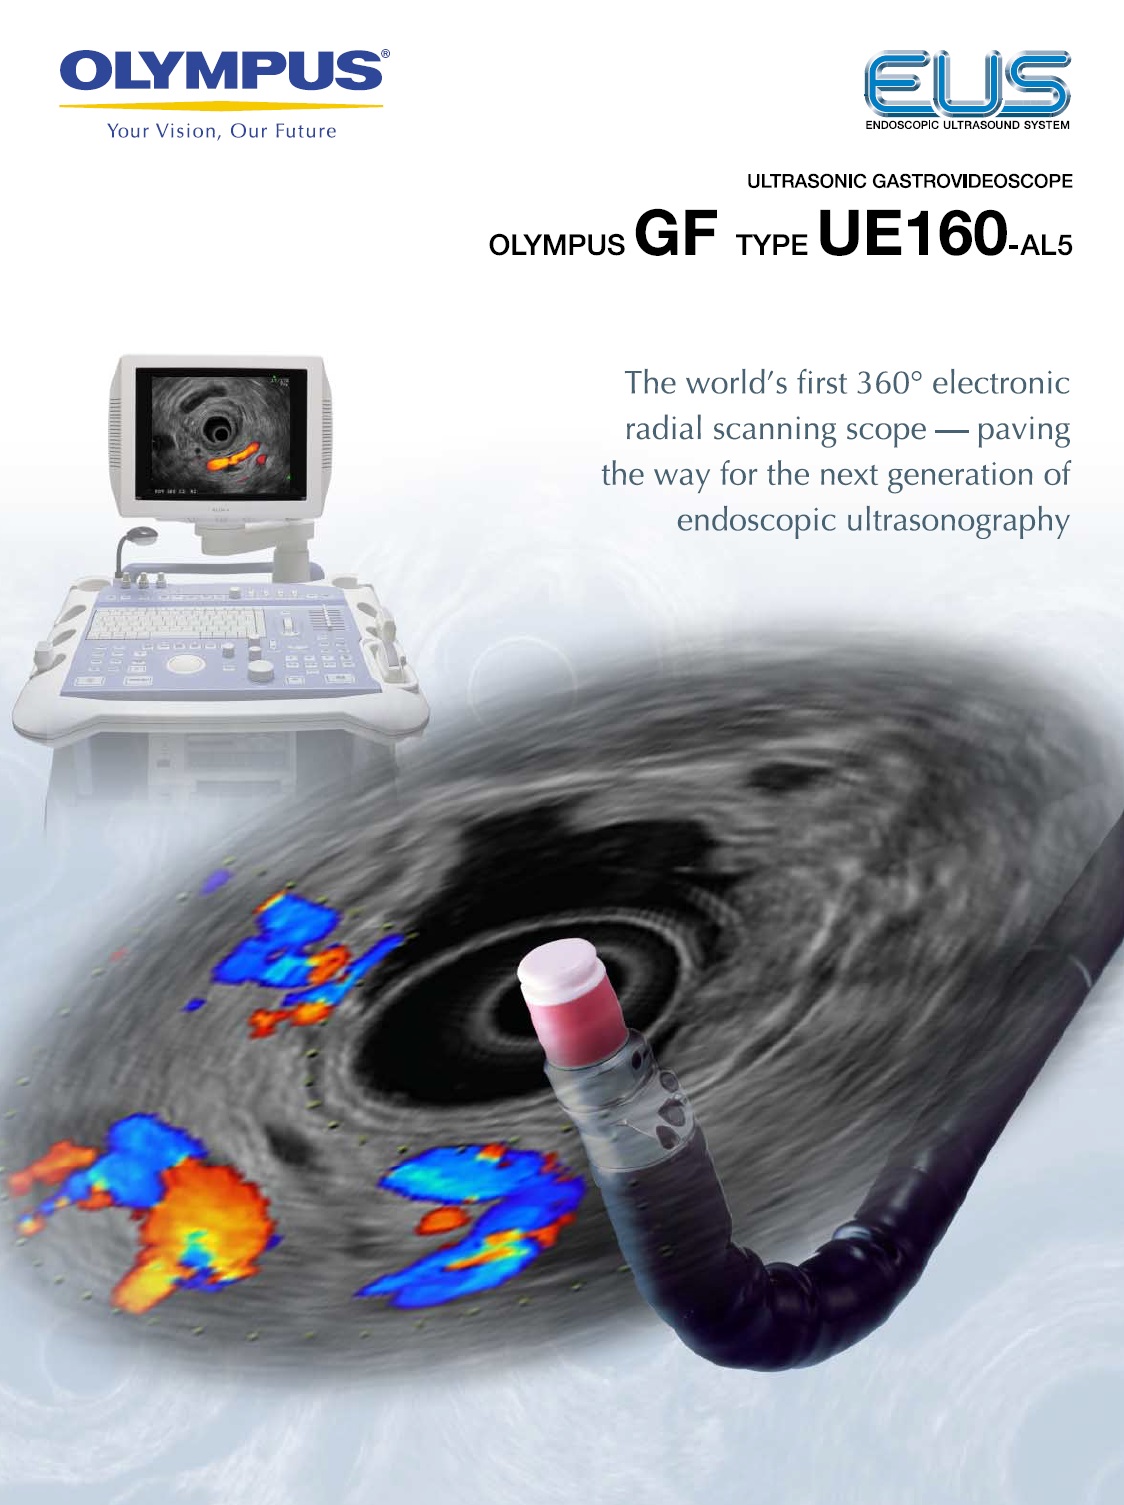 Videoecoendoscop Radial EVIS EXERA GF-UE160-AL5